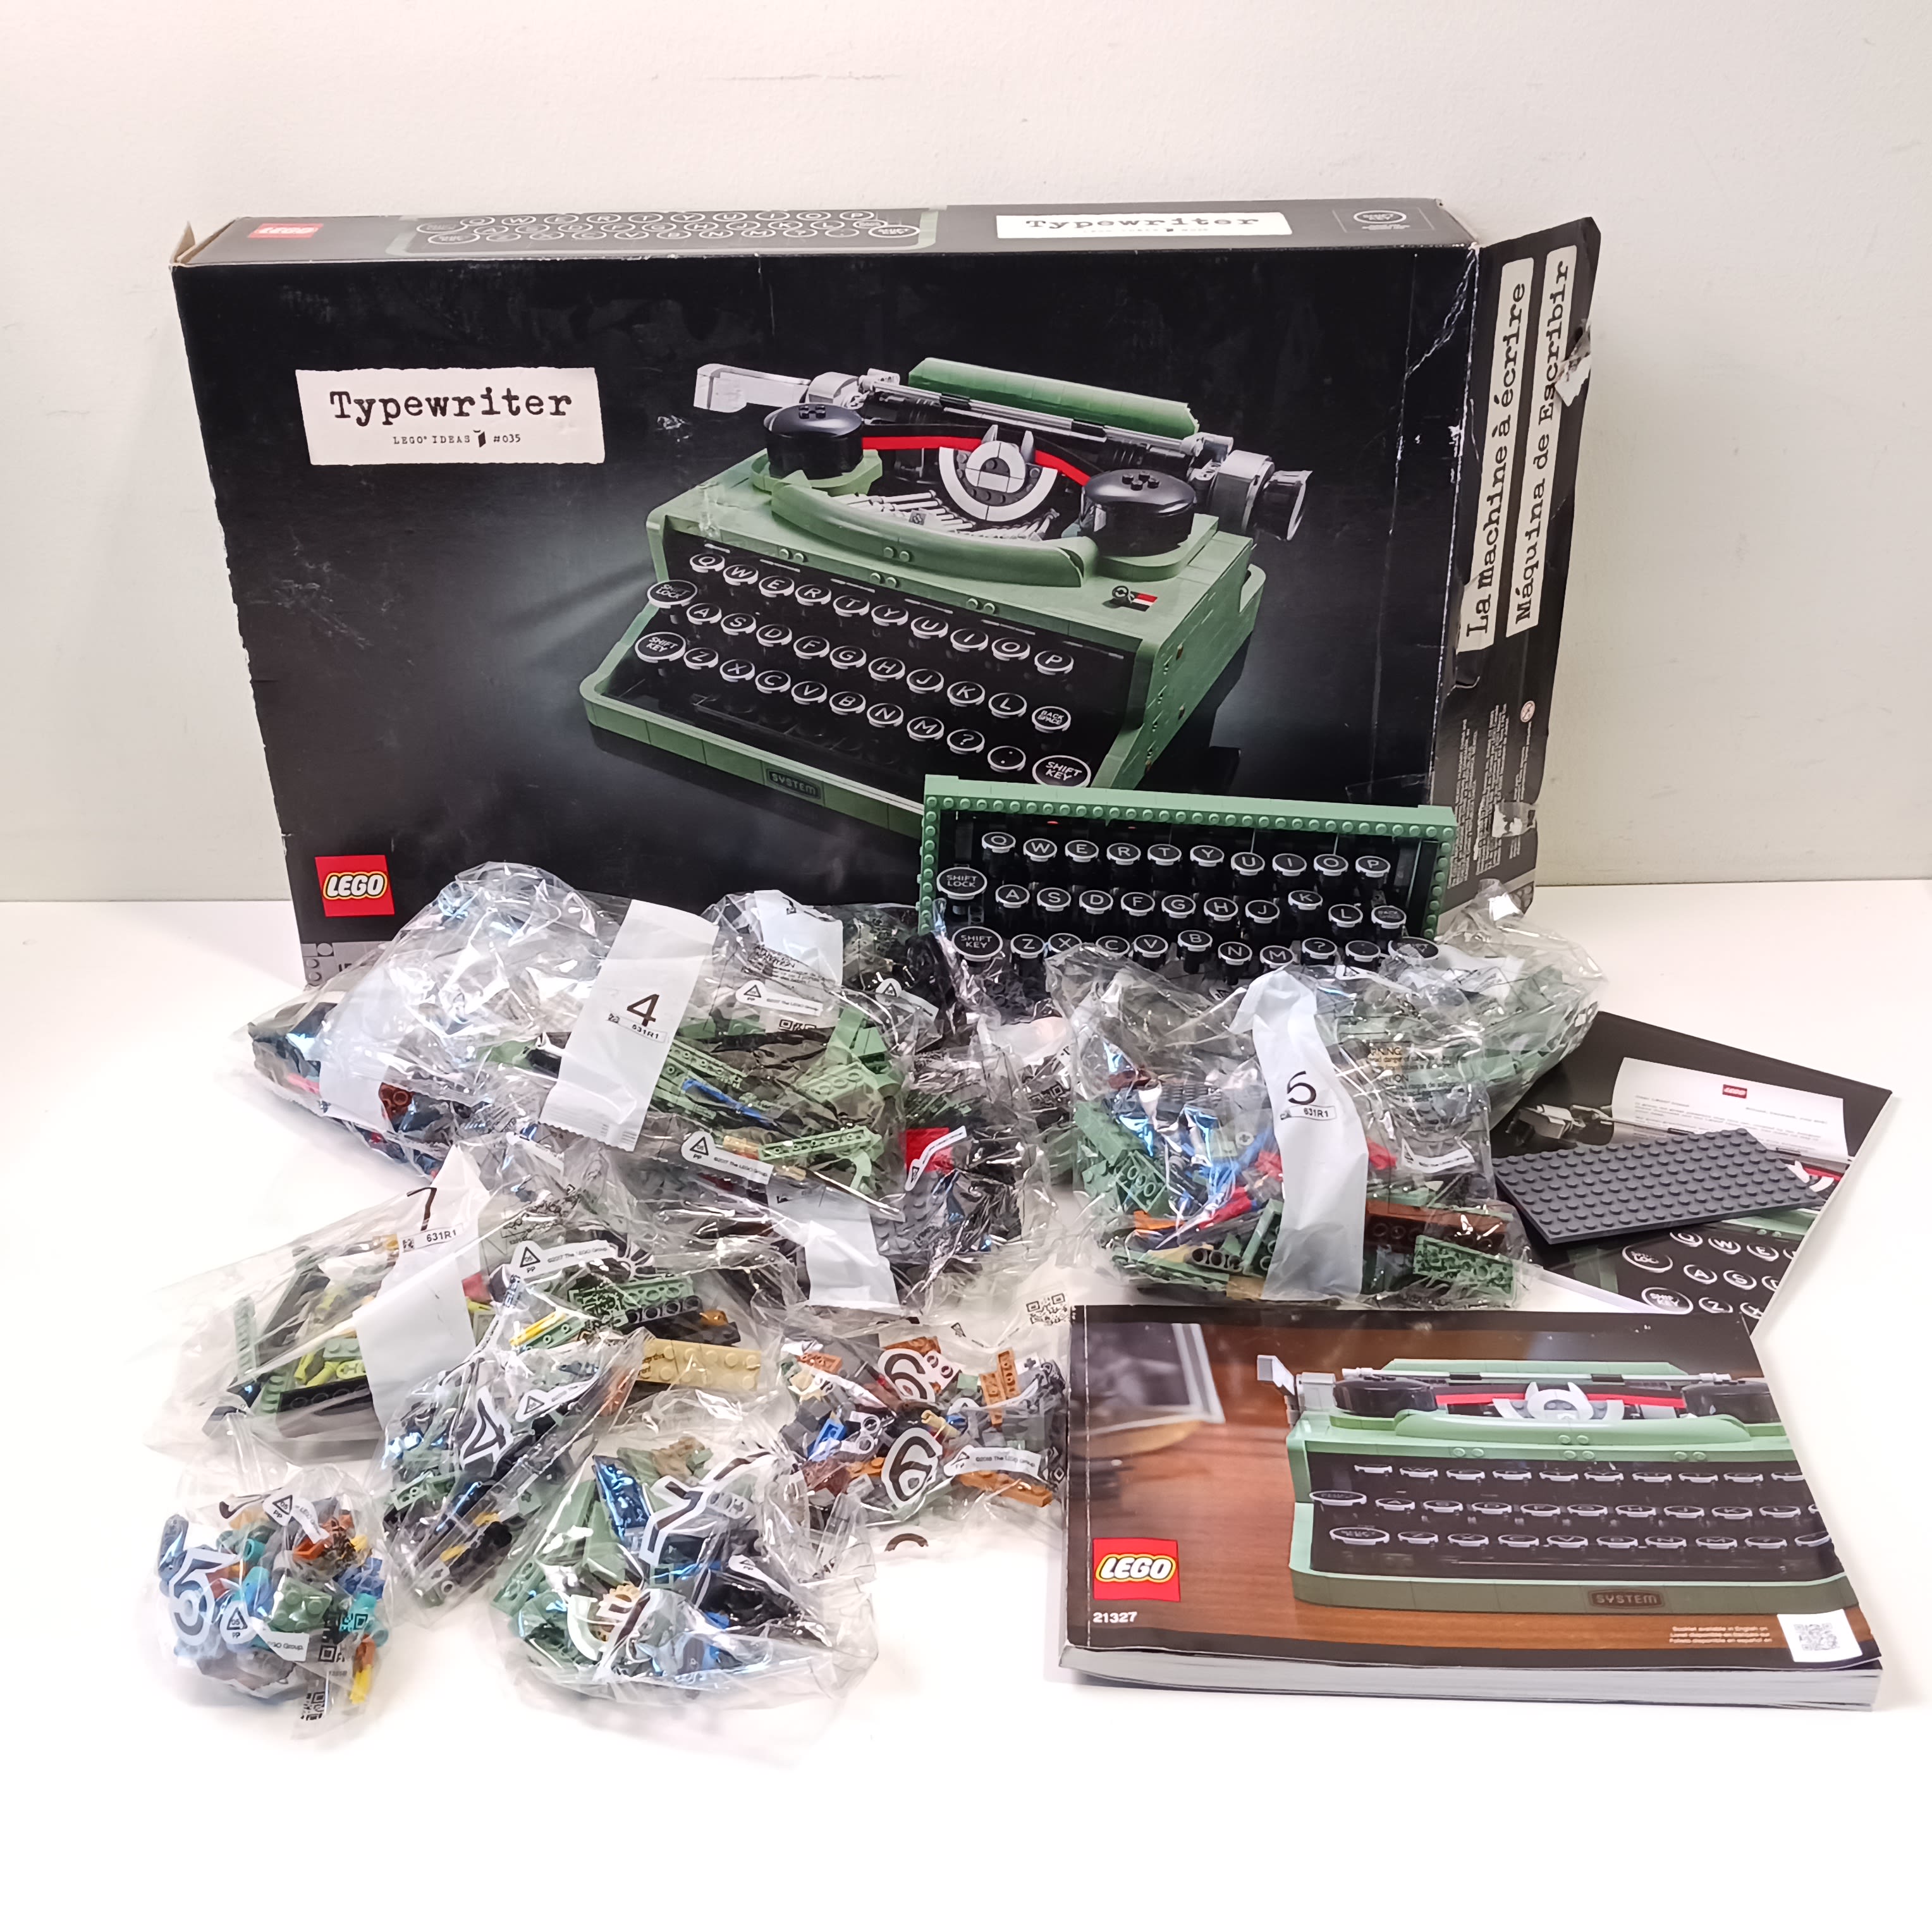 LEGO® 21327 Typewriter 21327 - ToyPro